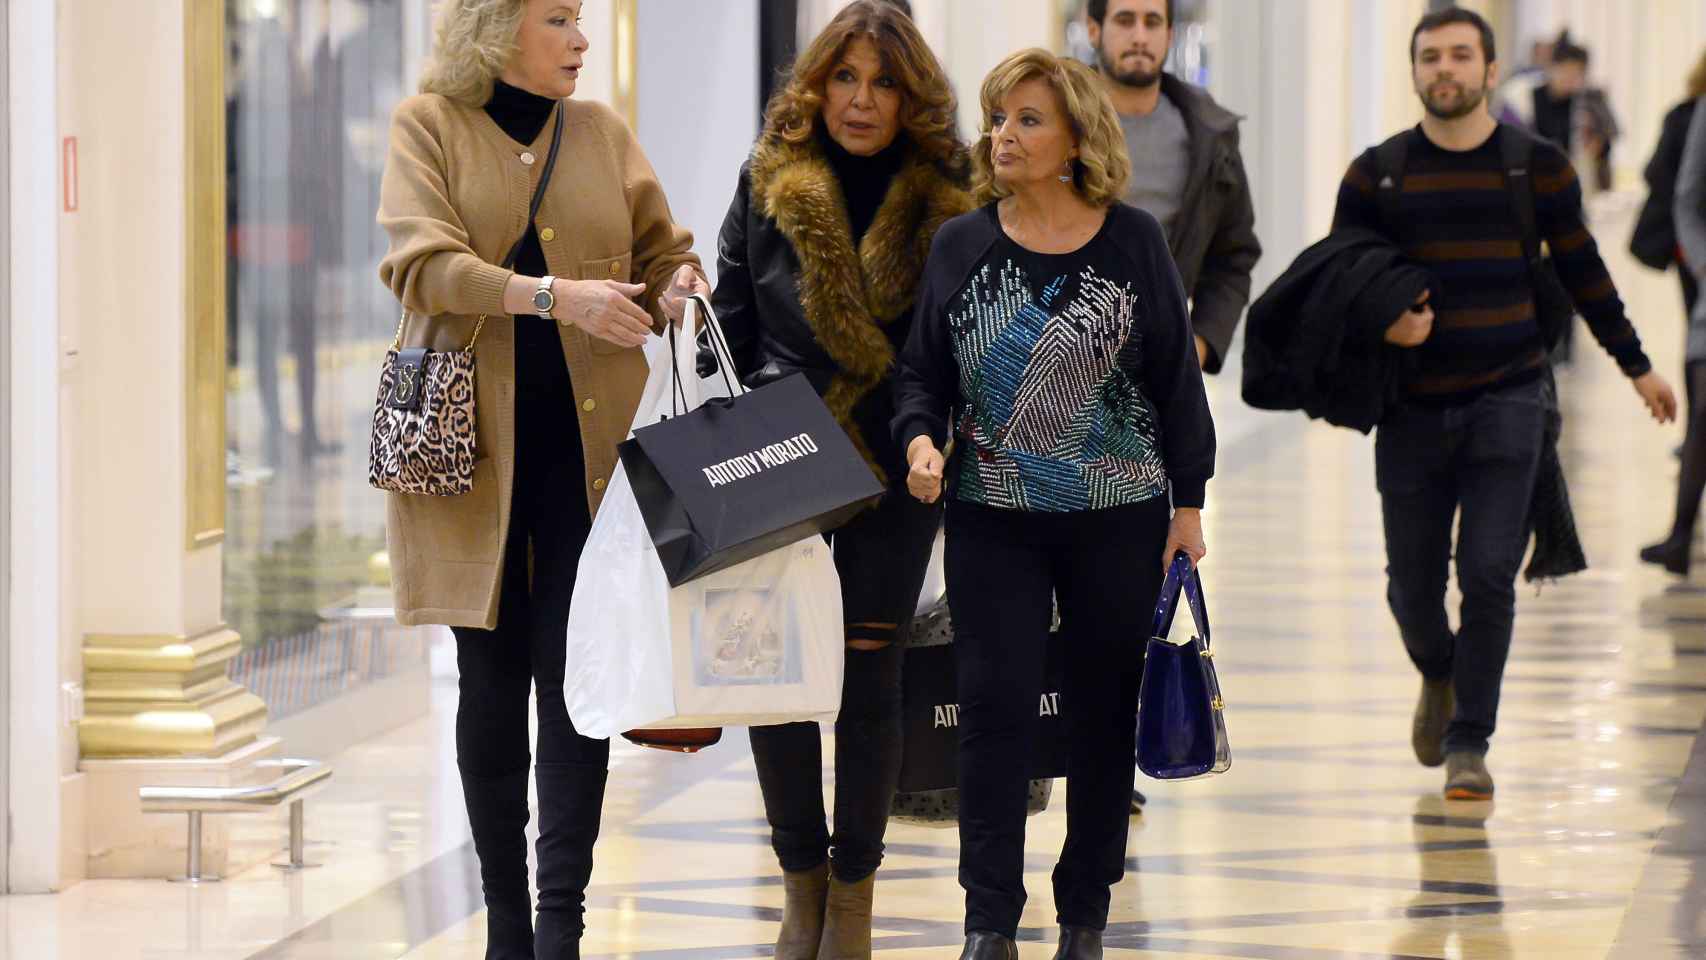 María Teresa con sus dos amigas de compras durante el reality